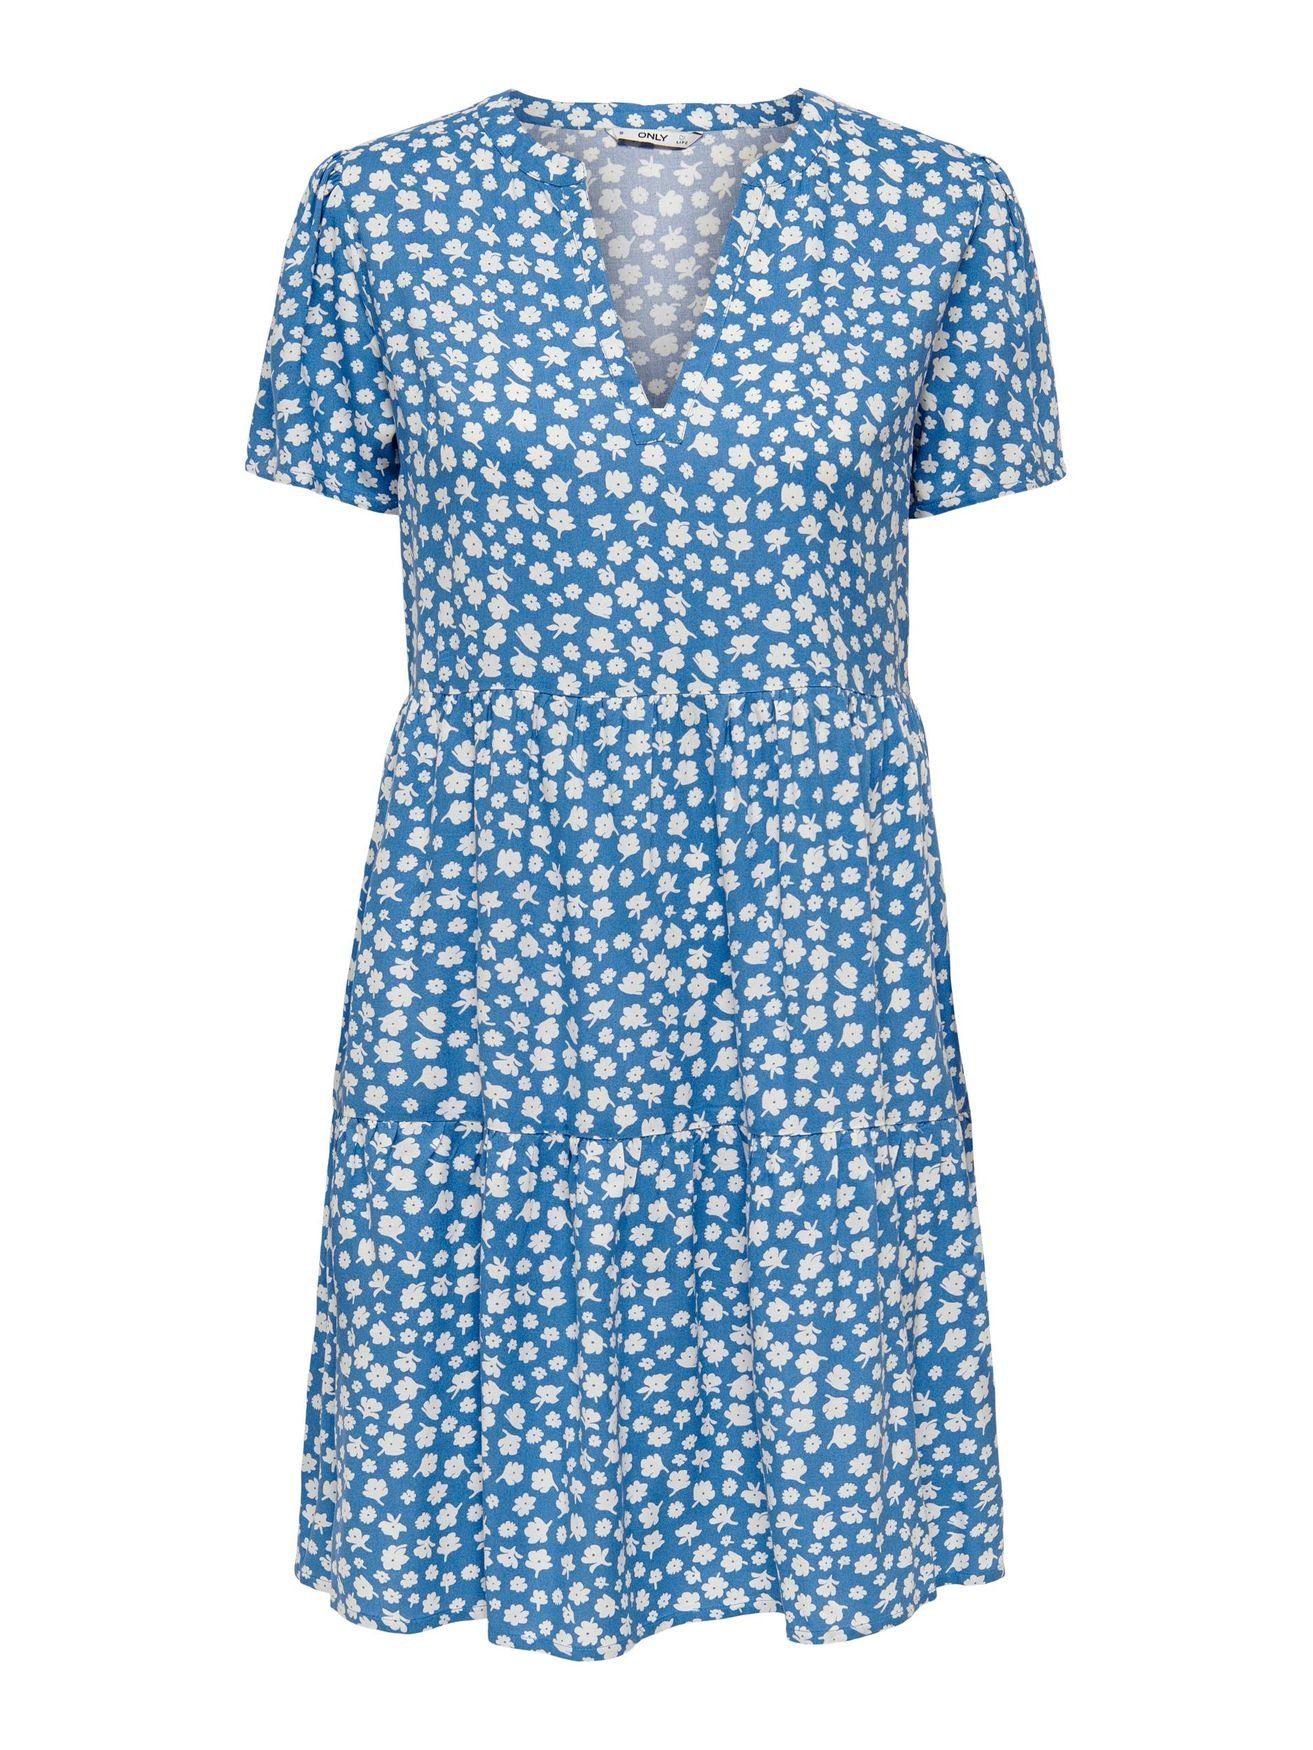 ONLZALLY V-Ausschnitt Kleid (knielang) Blusen 4928 Blau in ONLY Kurzes Shirtkleid